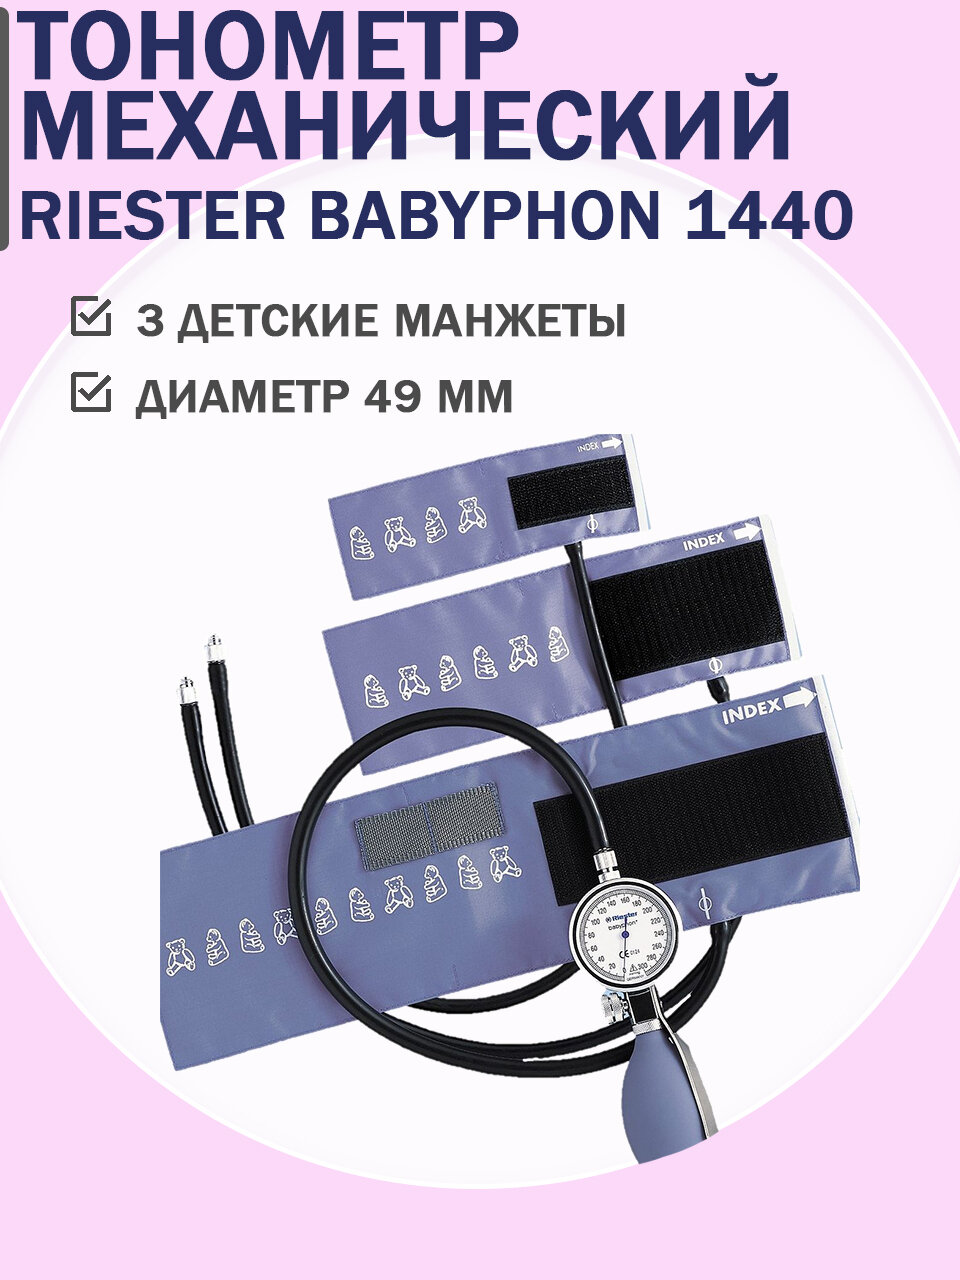 Детский механический тонометр 1440 Babyphon с 3-я манжетами